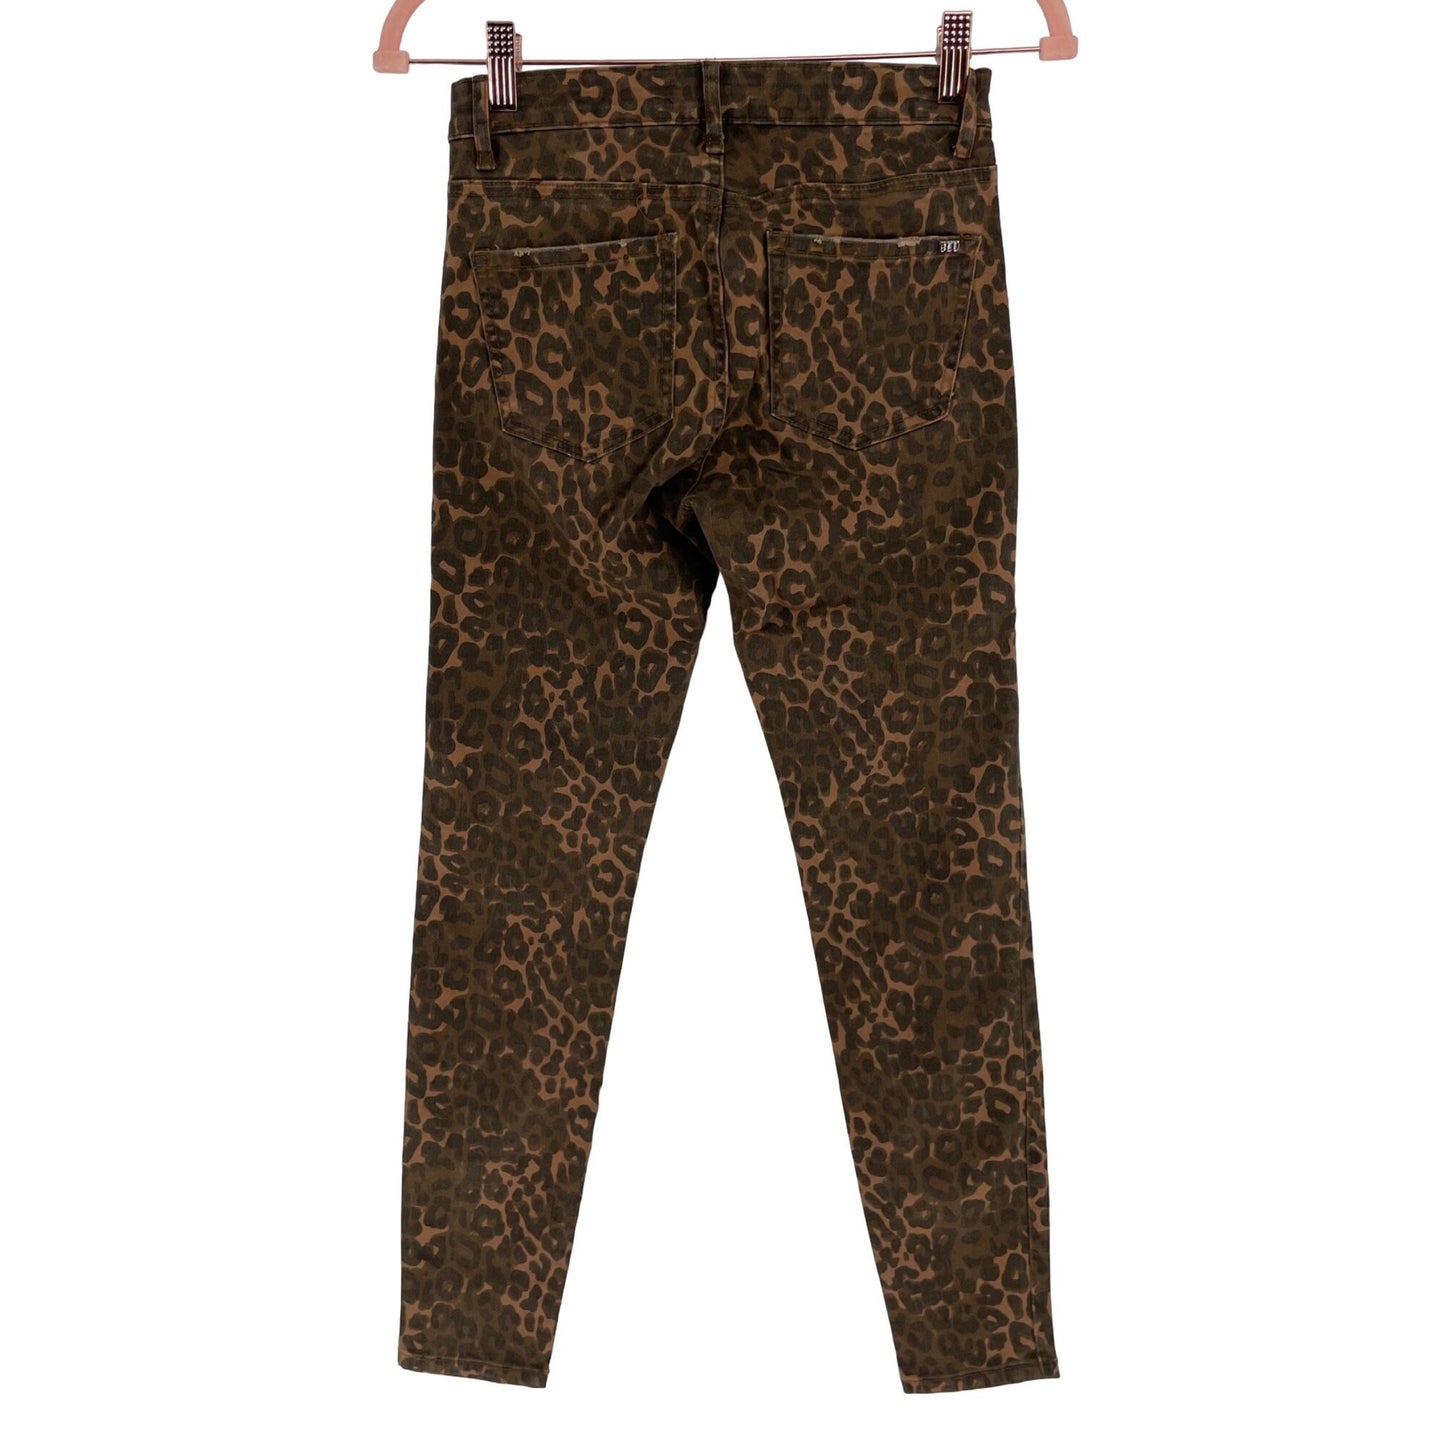 Tractr Blu Women's Size 26 Two-Tone Brown Leopard Print Skinny Jeans